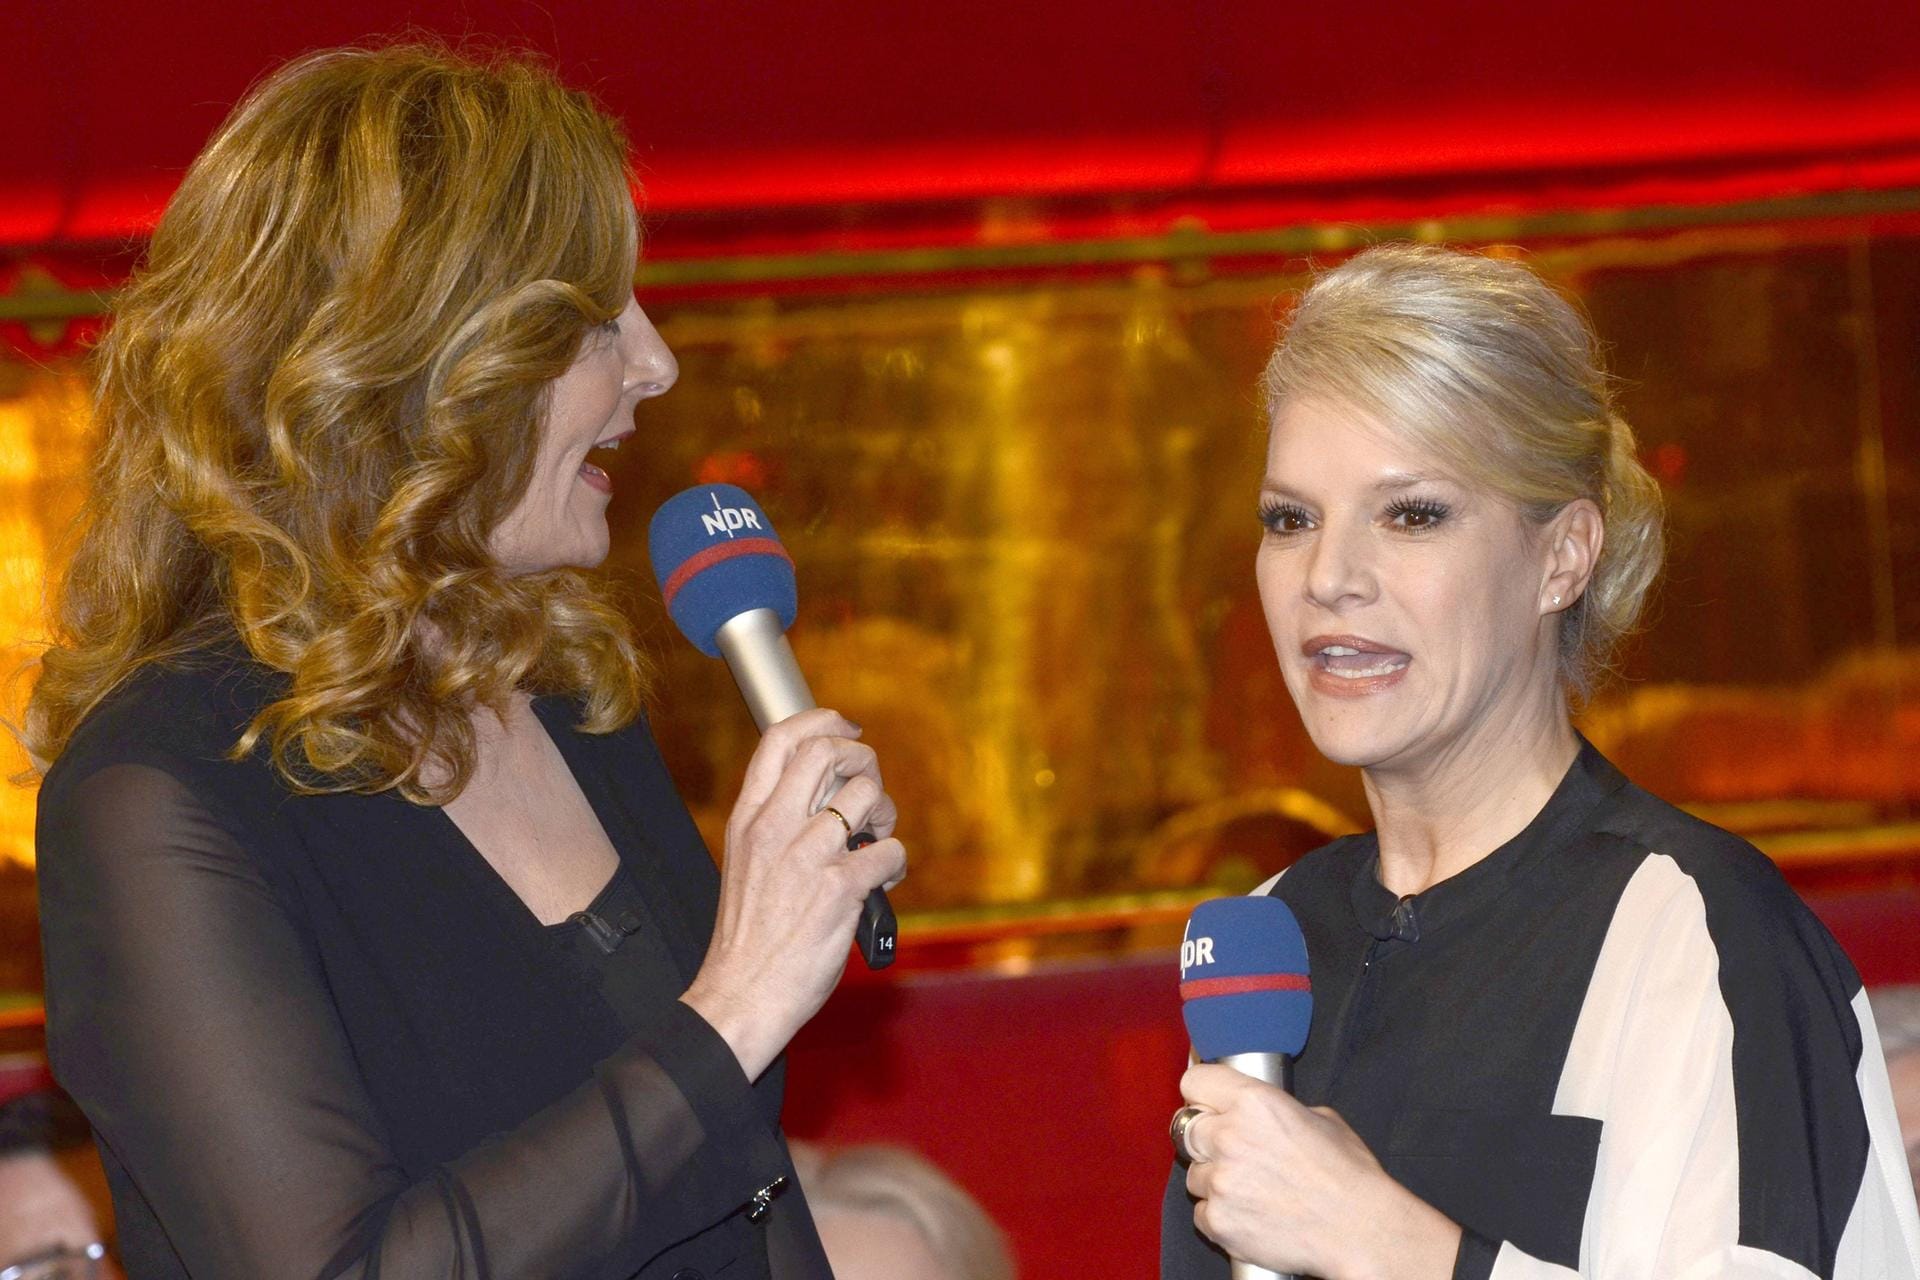 Eine Show moderierte Tietjen mit Ina Müller, die für Hirschhausen eingesprungen war.